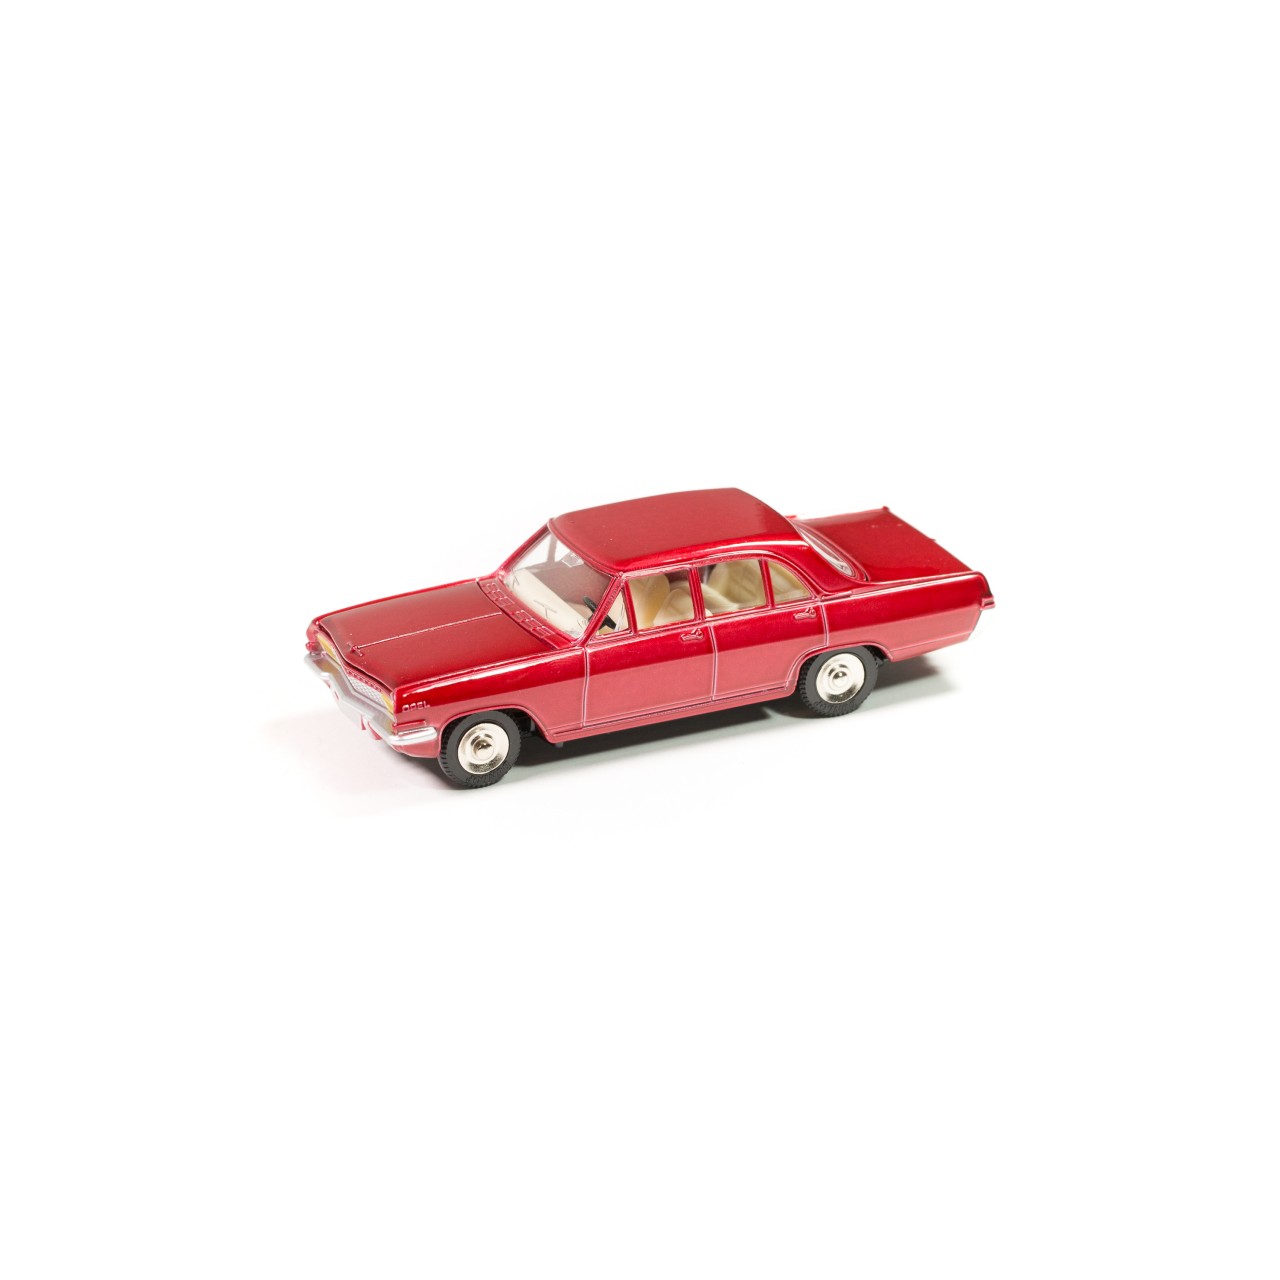 Details about  / Car Reissue Dinky Toys Deagostini Peugeot Van//Wagon Tolé Esso DK26